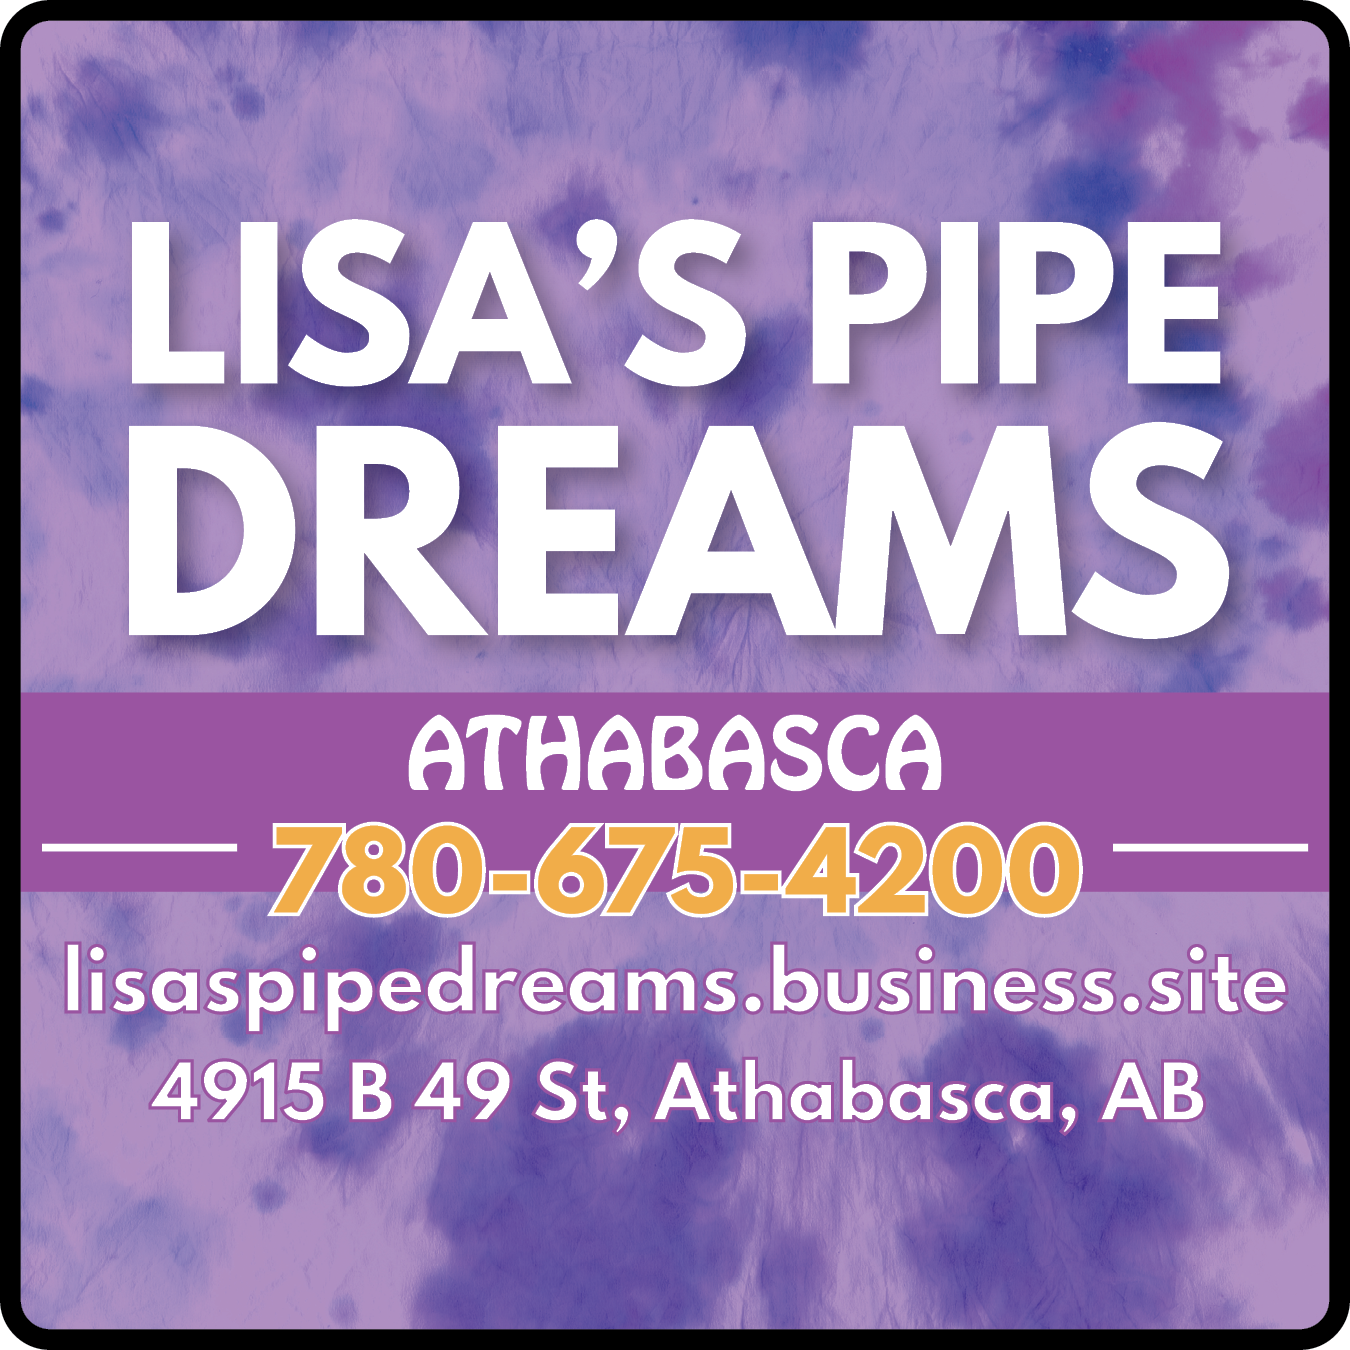 Lisa's Pipe Dreams